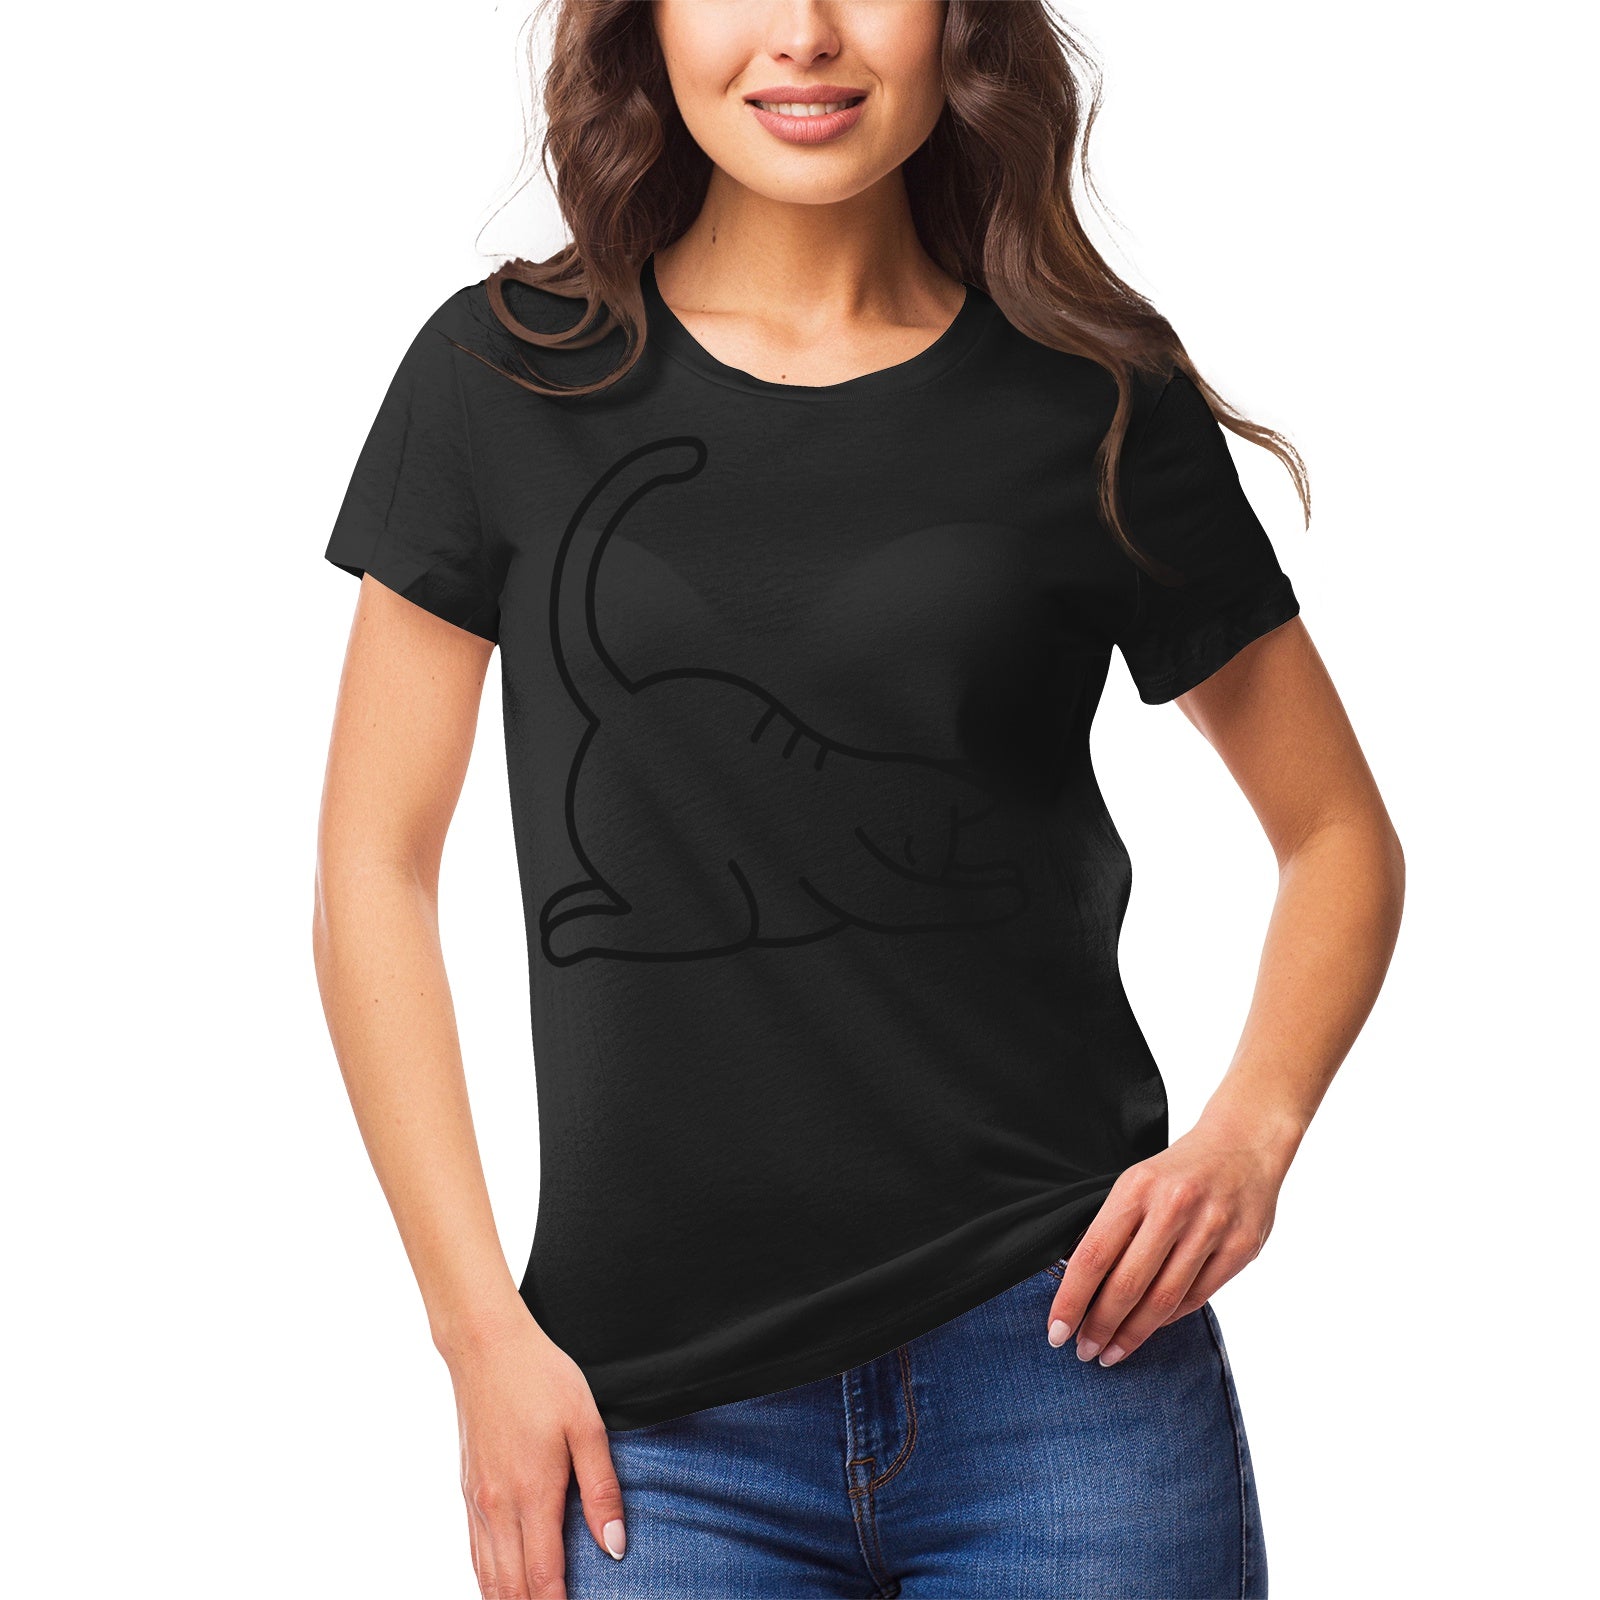 Yoga Cat 8 Women's Ultrasoft Pima Cotton T‑shirt - DromedarShop.com Online Boutique